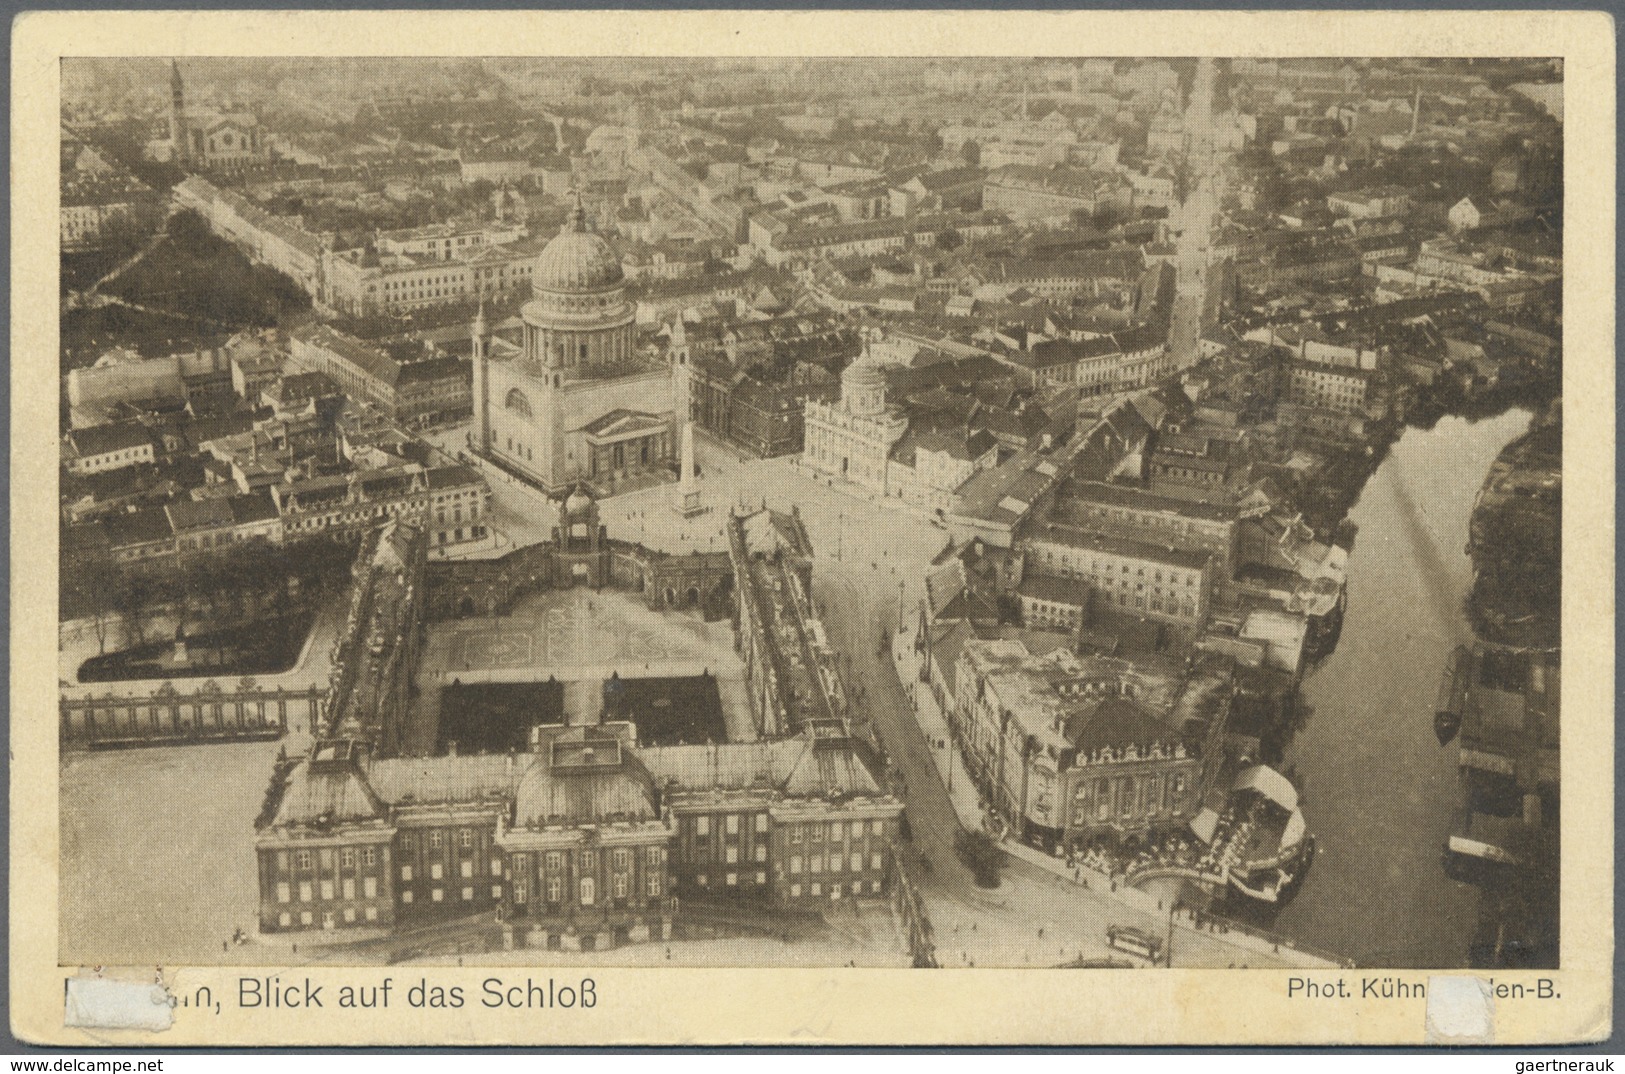 Br Zeppelinpost Deutschland: 1919: LZ 120/BODENSEE. 20.10.19 (Bordstempel) Auf Fotokarte "geschrieben A - Poste Aérienne & Zeppelin